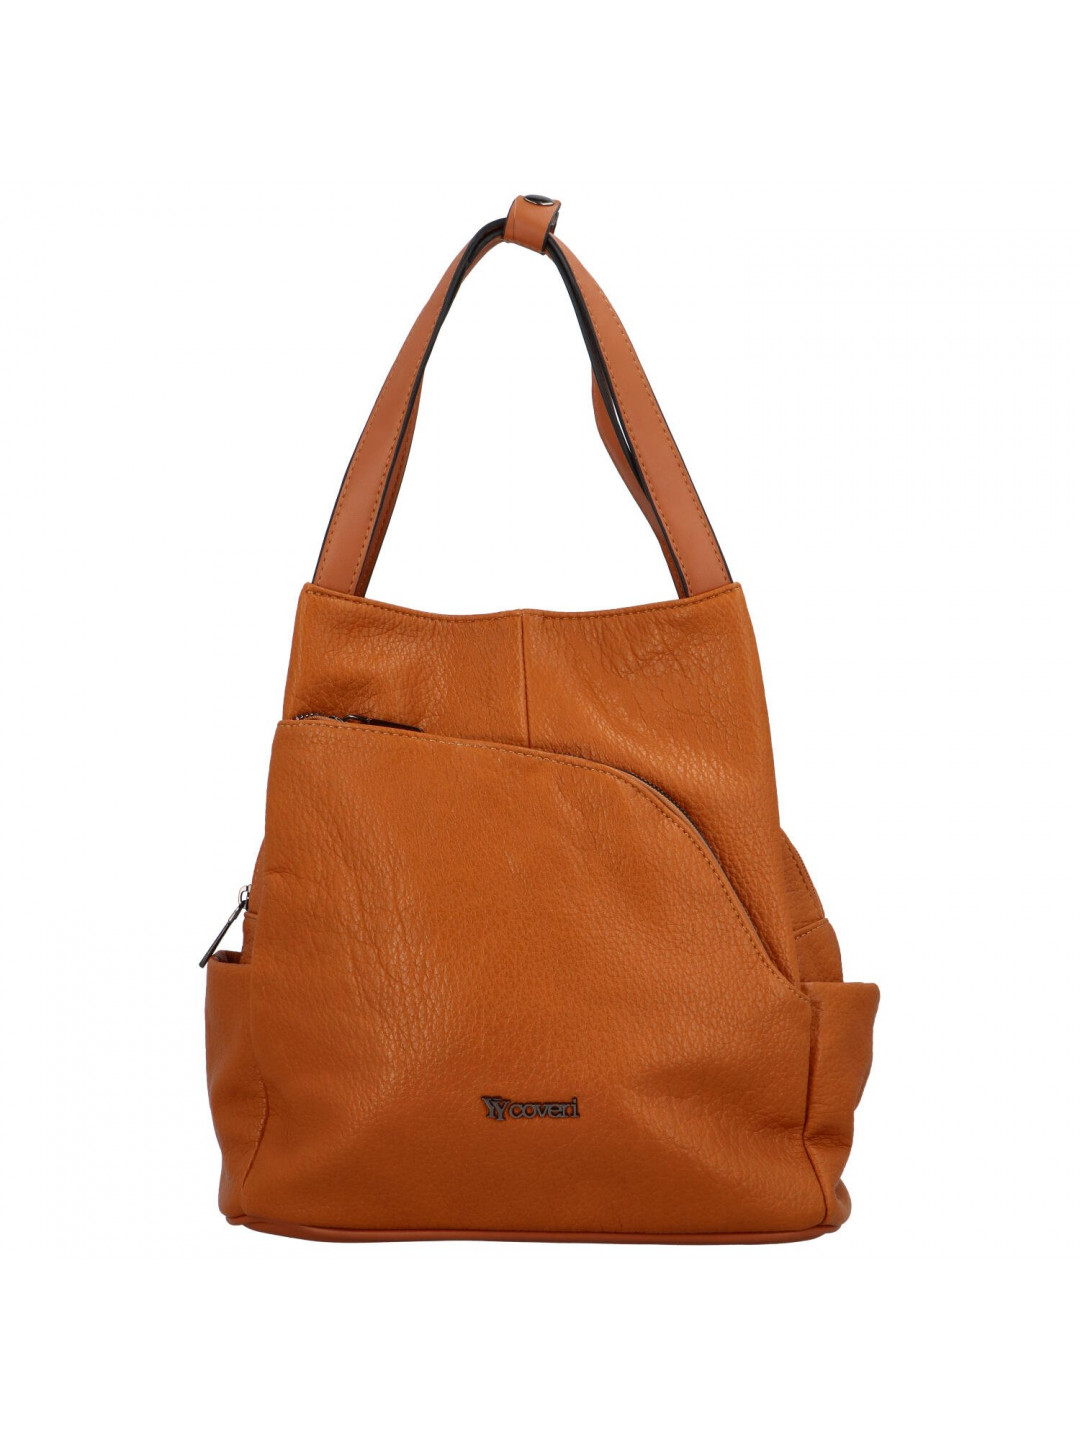 Designový dámský koženkový batůžek taška Armand hnědá